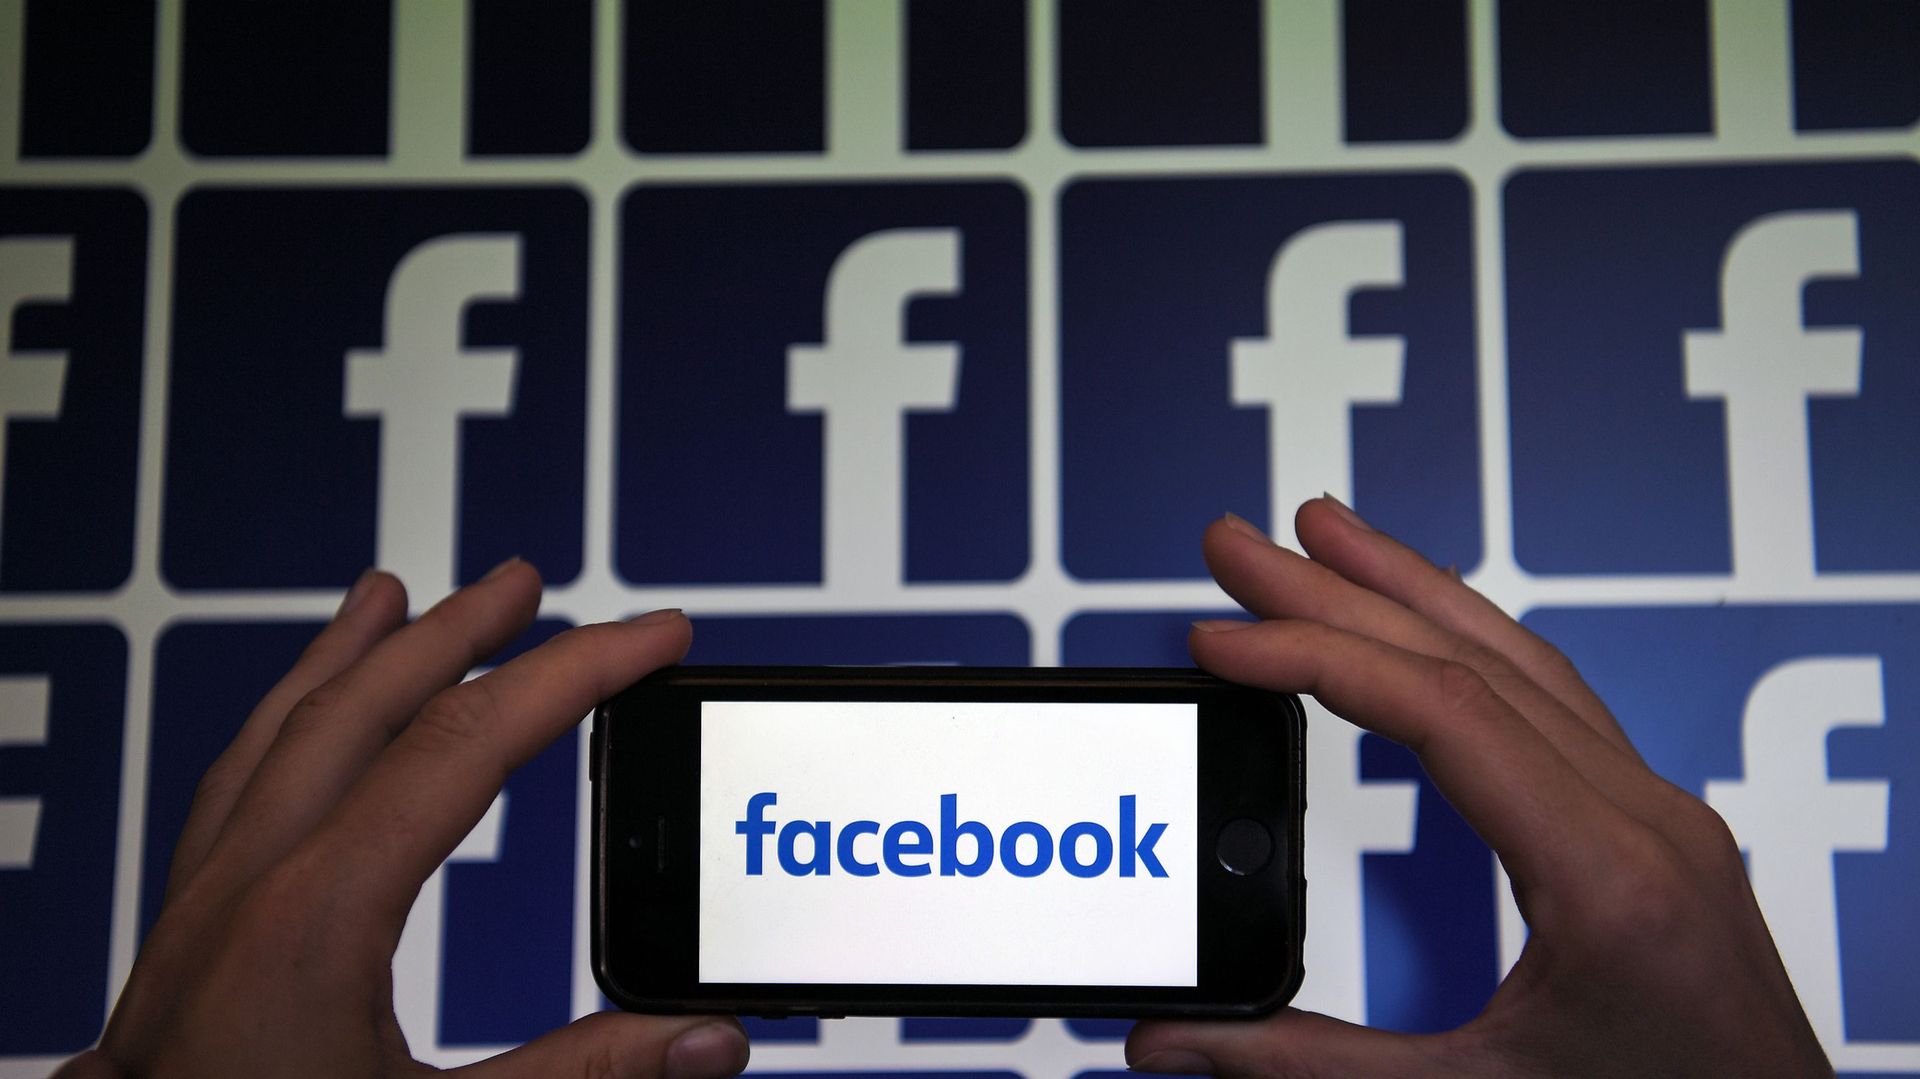 Facebook reporte le lancement en Europe de son application de rencontre